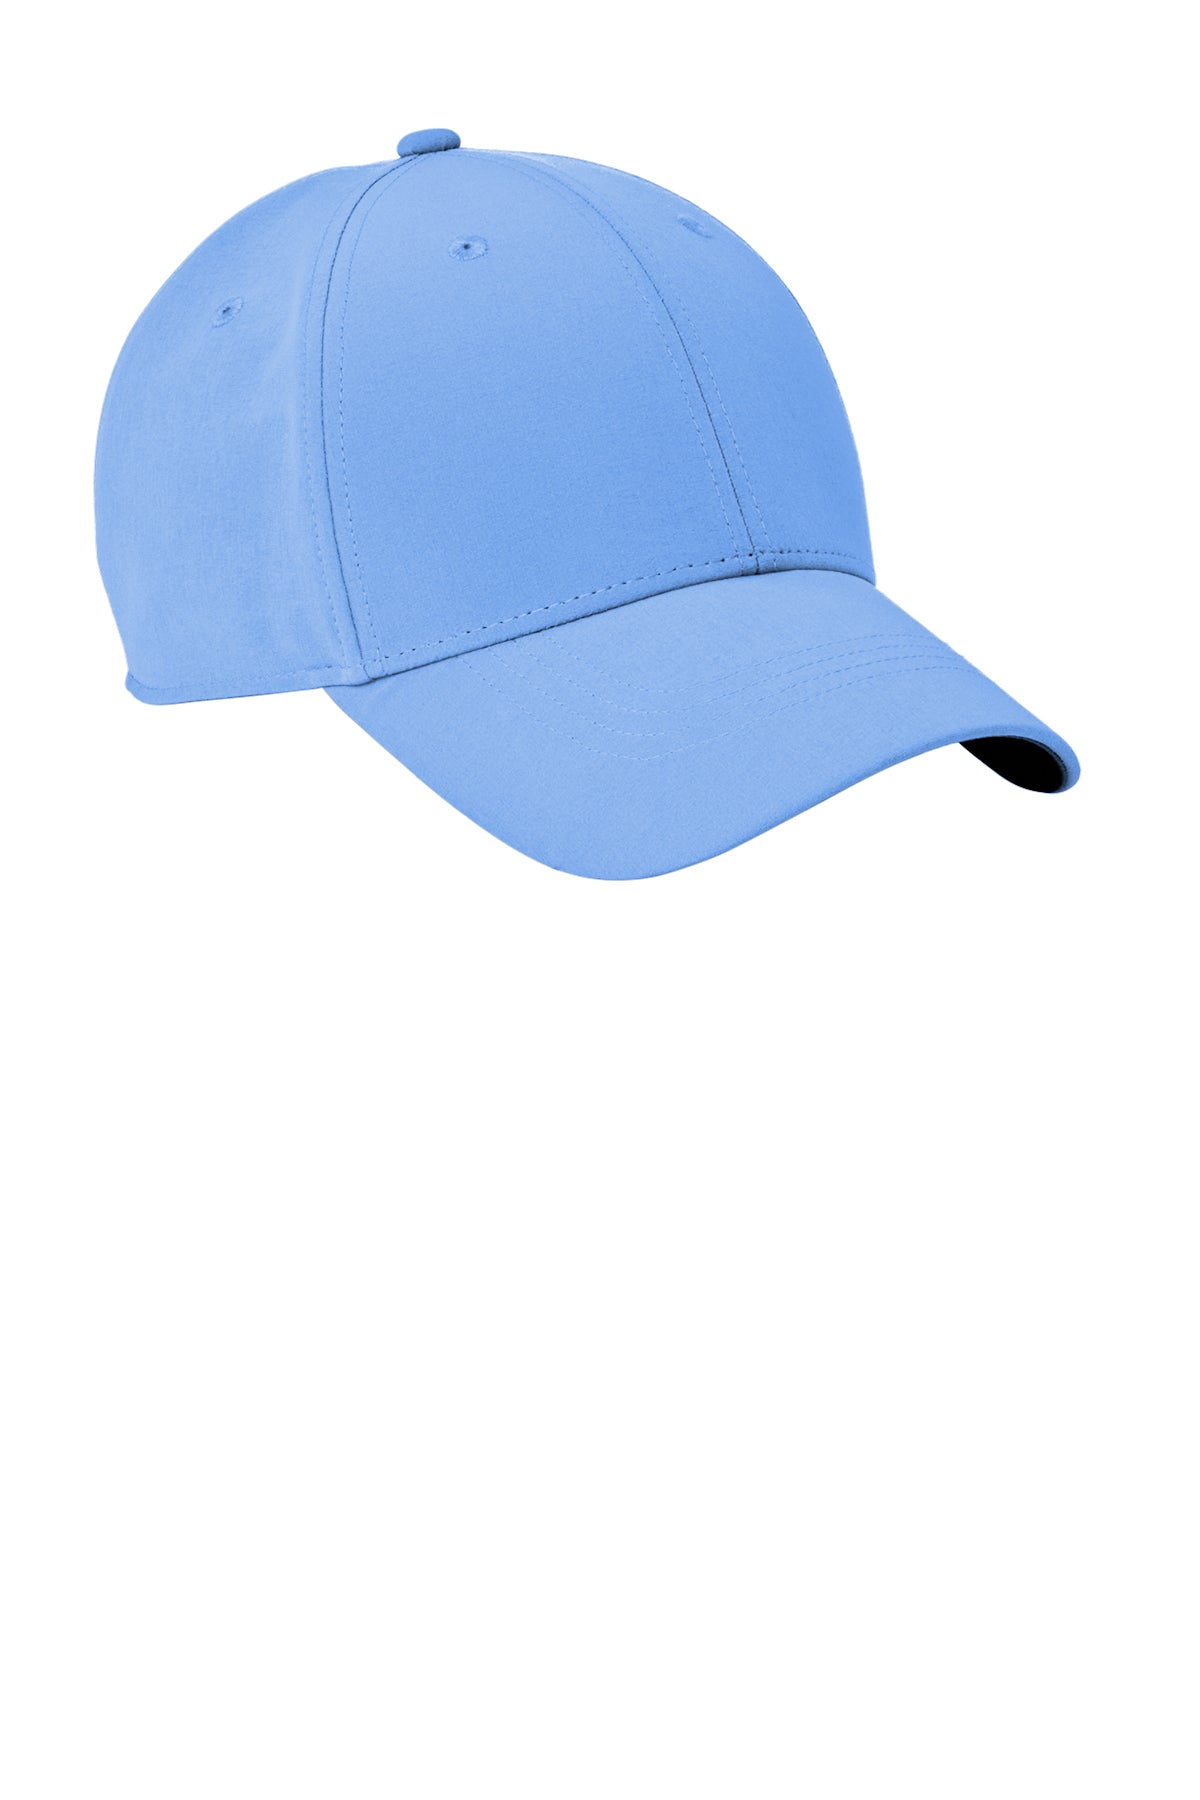 Nike Dri-FIT Legacy Custom Caps, Valor Blue